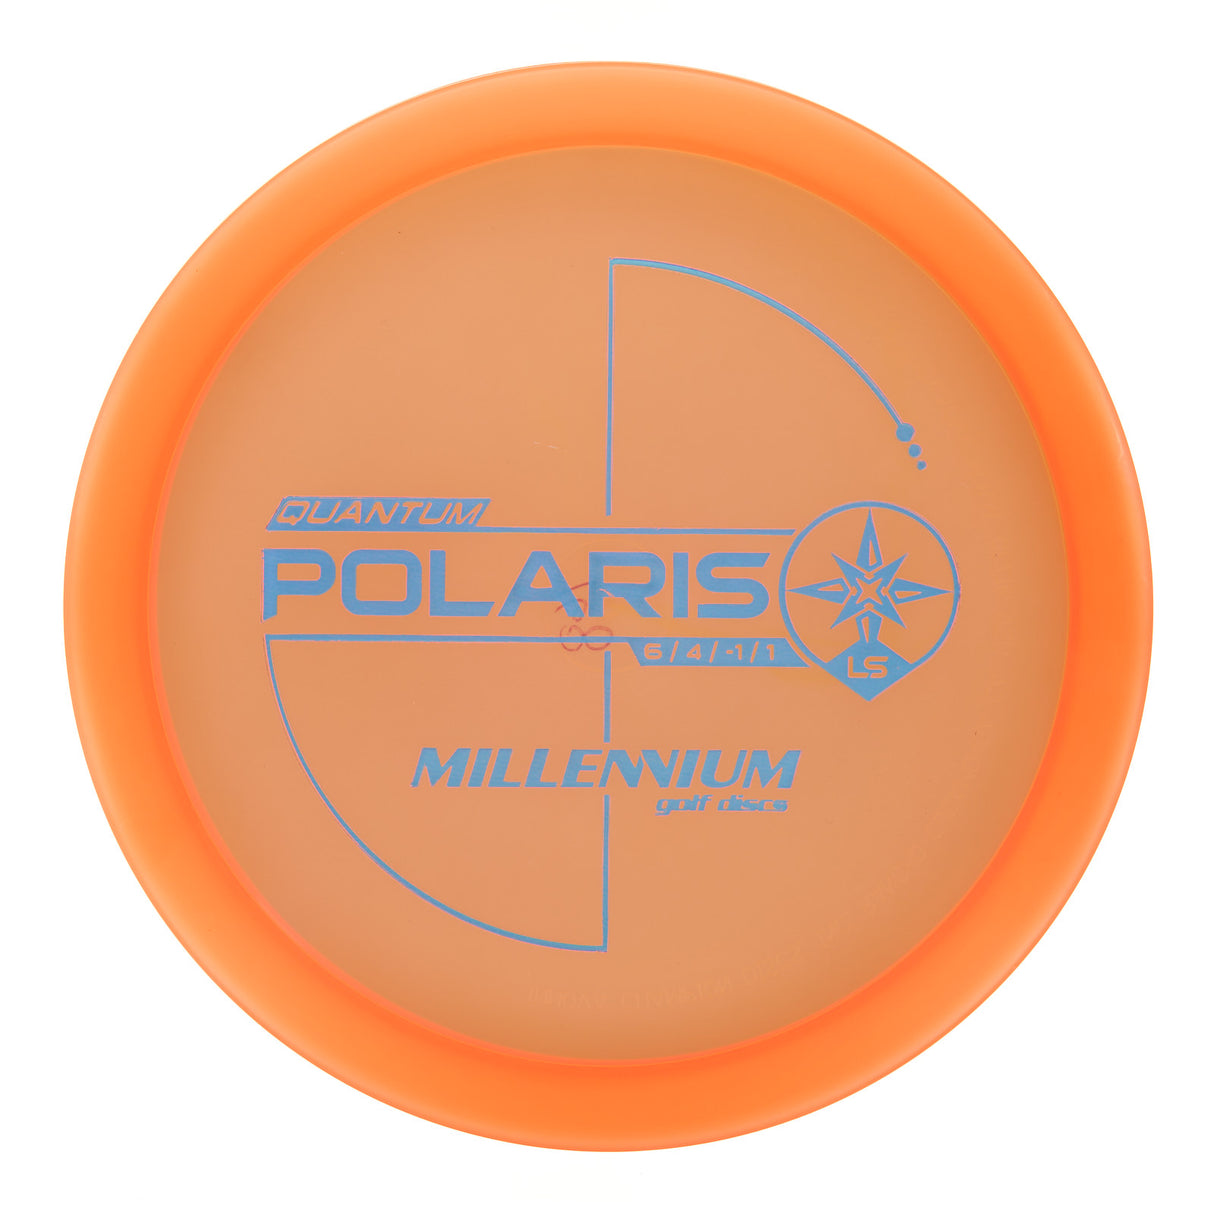 Millennium Polaris LS - Quantum 169g | Style 0001